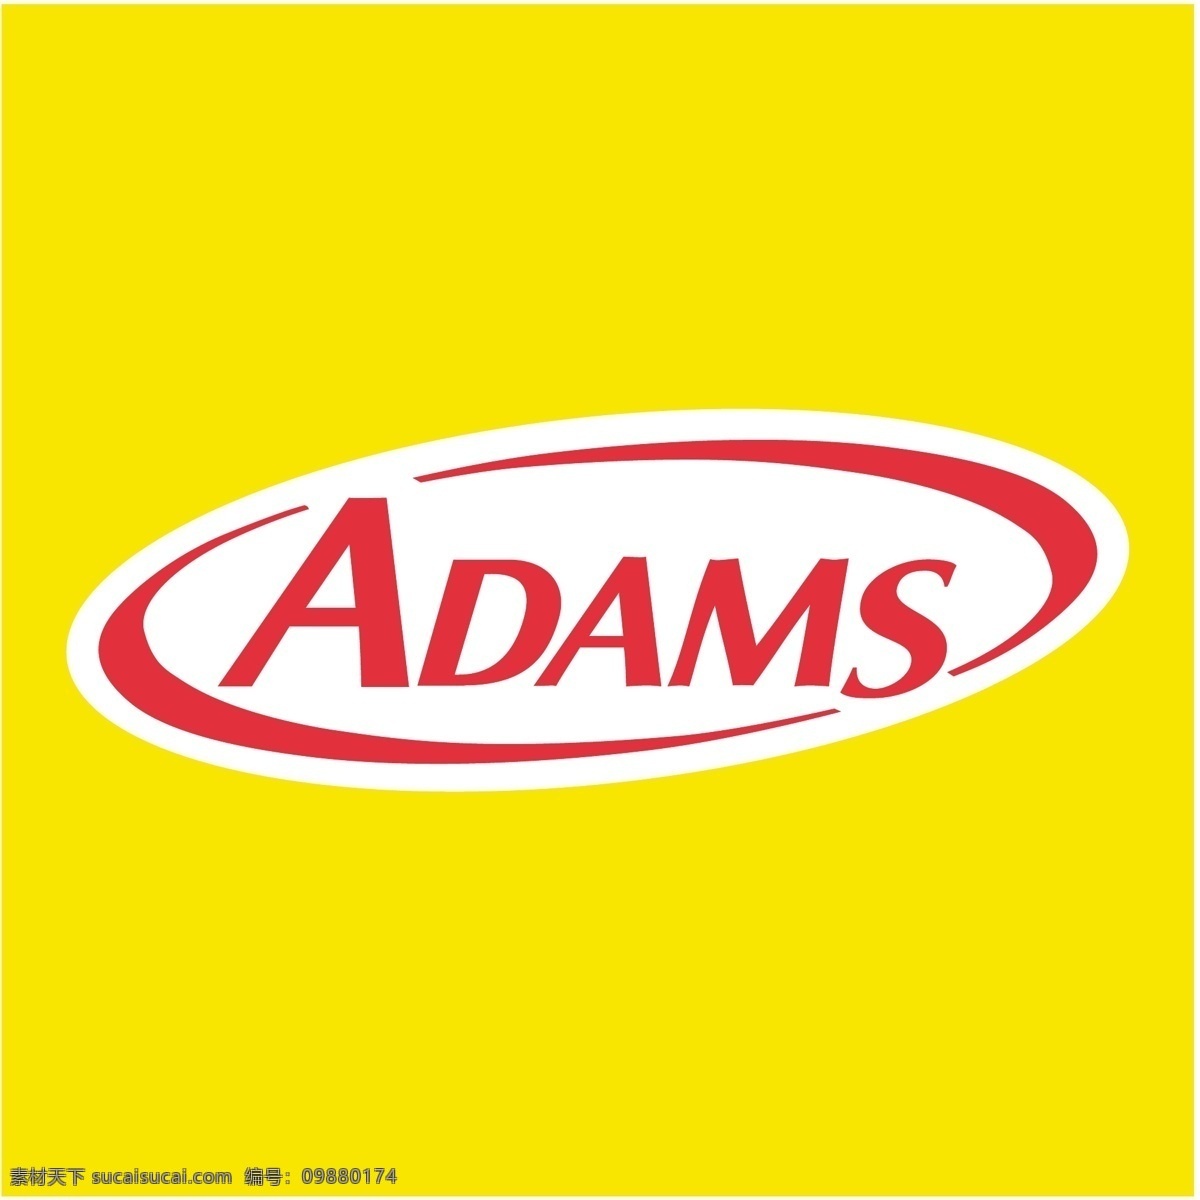 亚当斯 矢量 斯托弗 赛车 塞缪尔亚当斯 亚当斯高尔夫 标志 标识 亚当斯表示 向量 矢量图 建筑家居